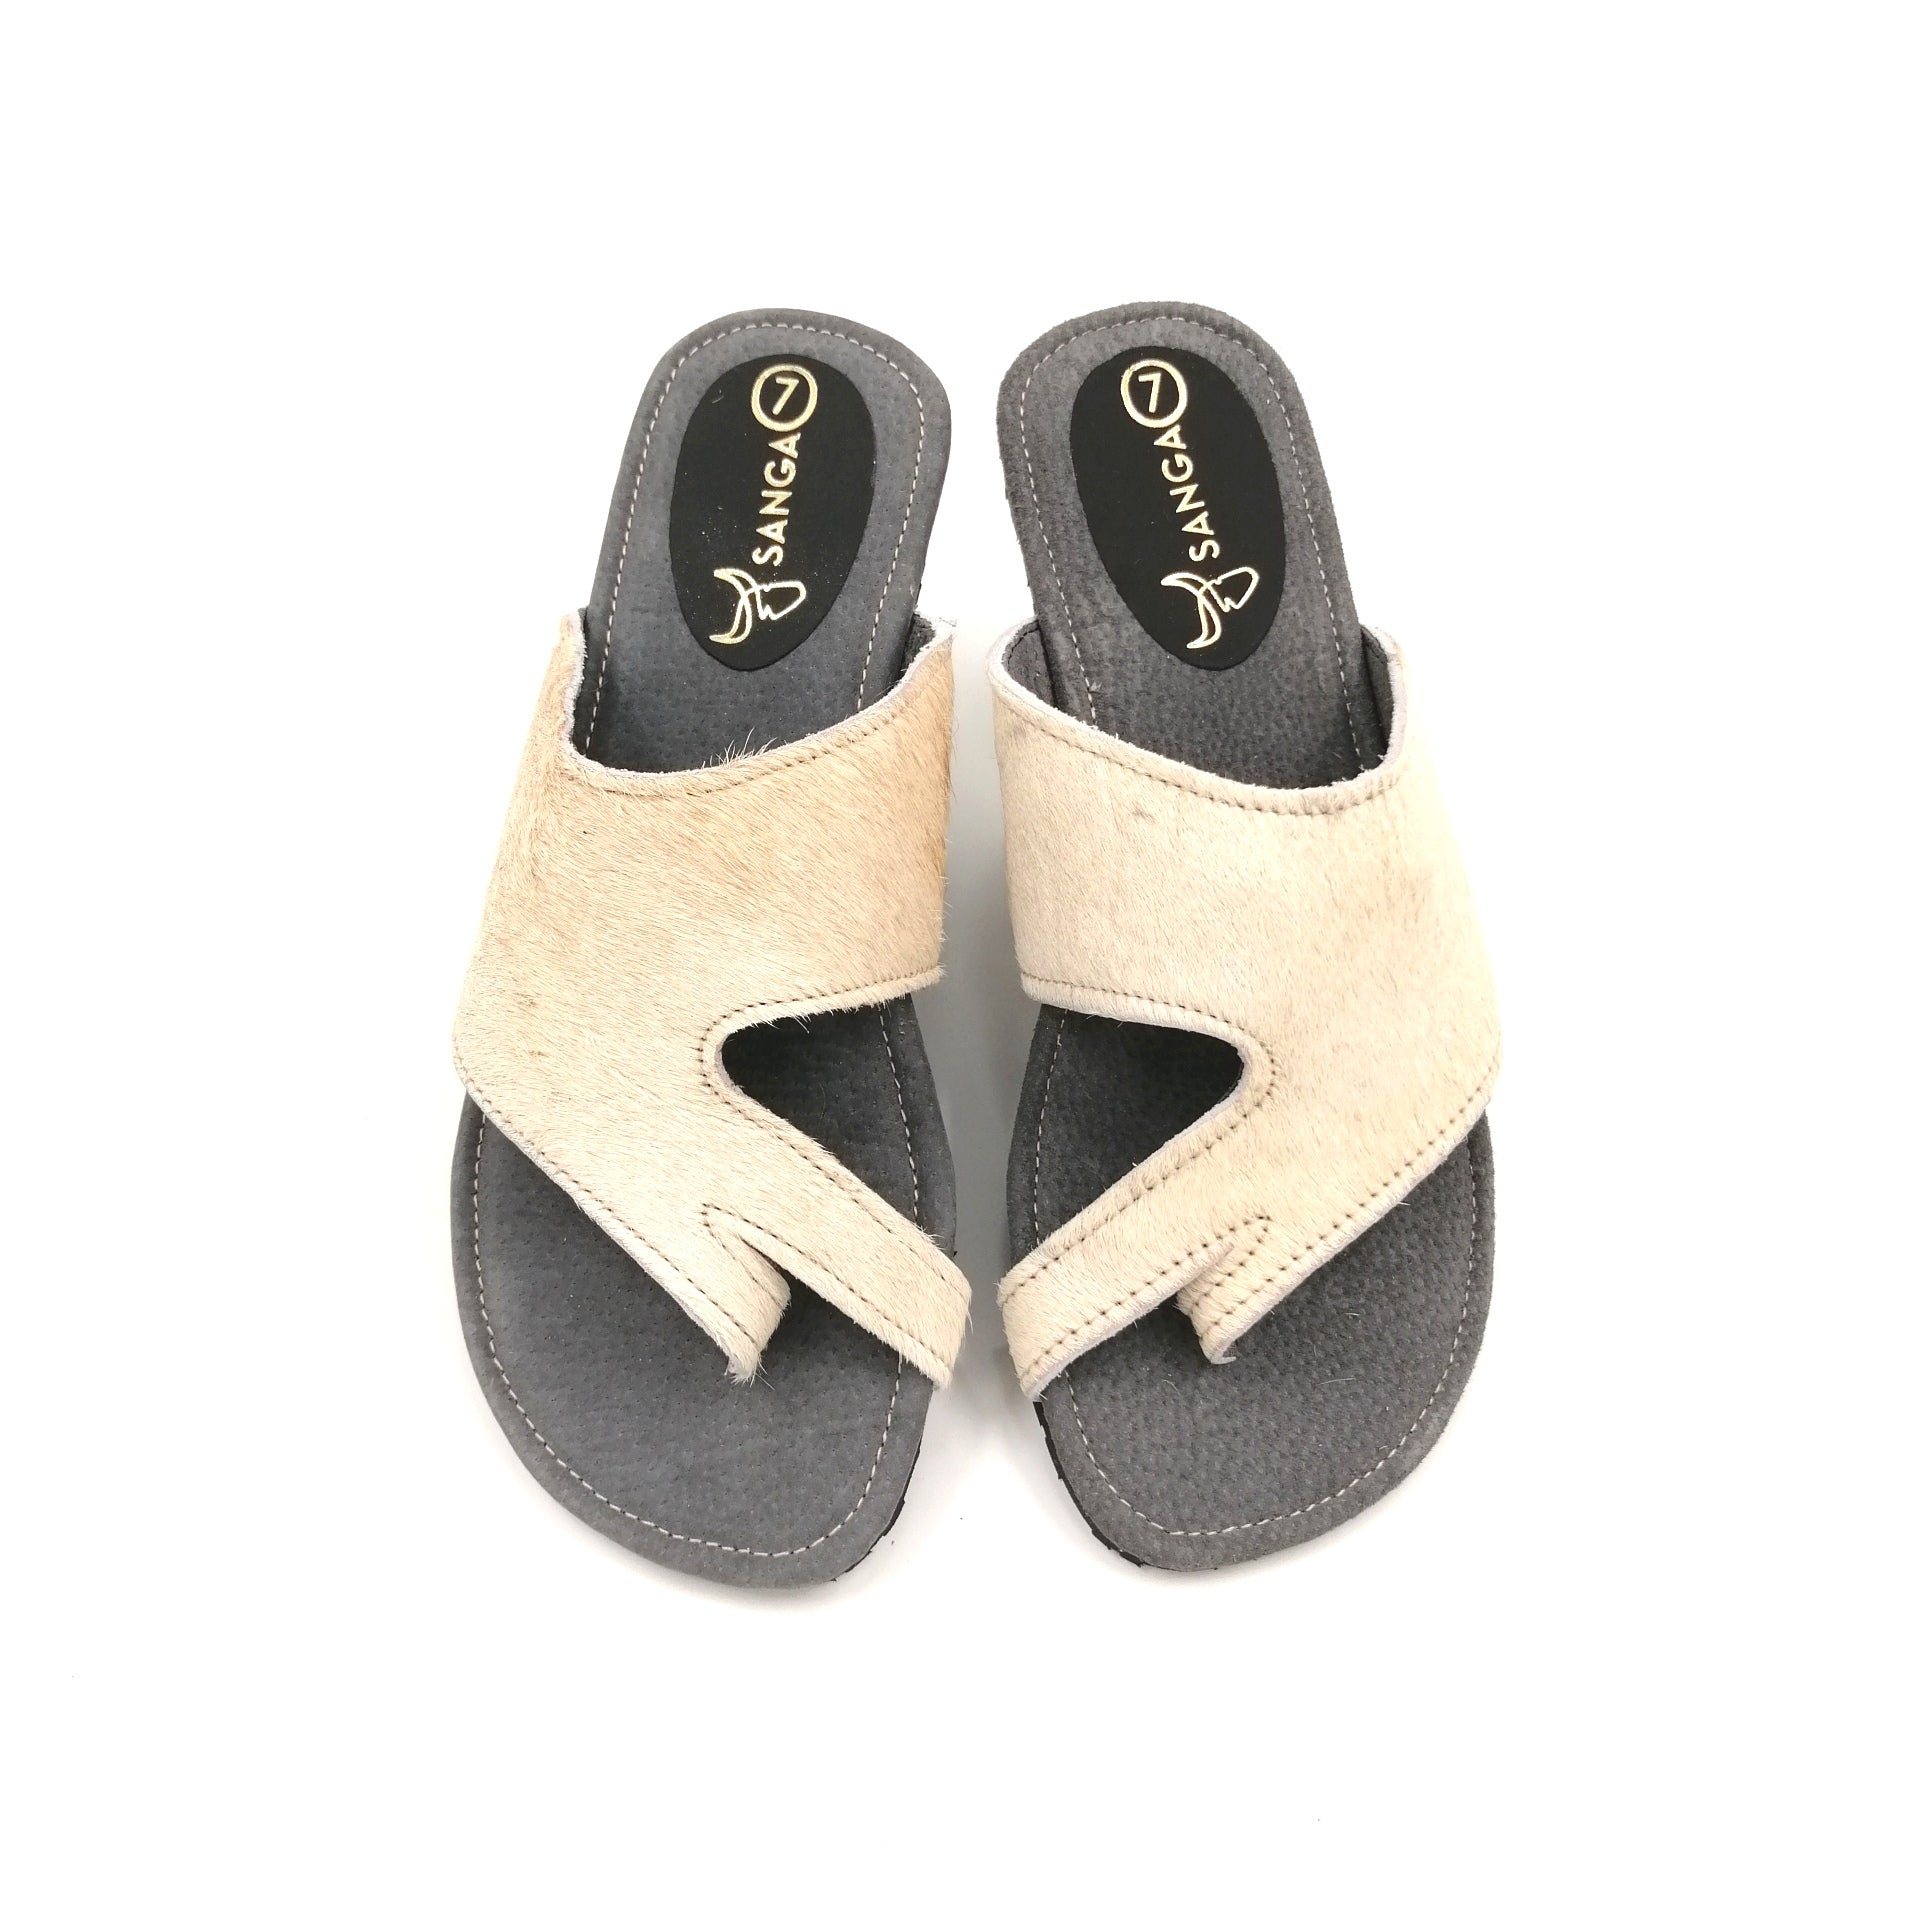 Sandals - SC20-SAN07-16 - Size 7